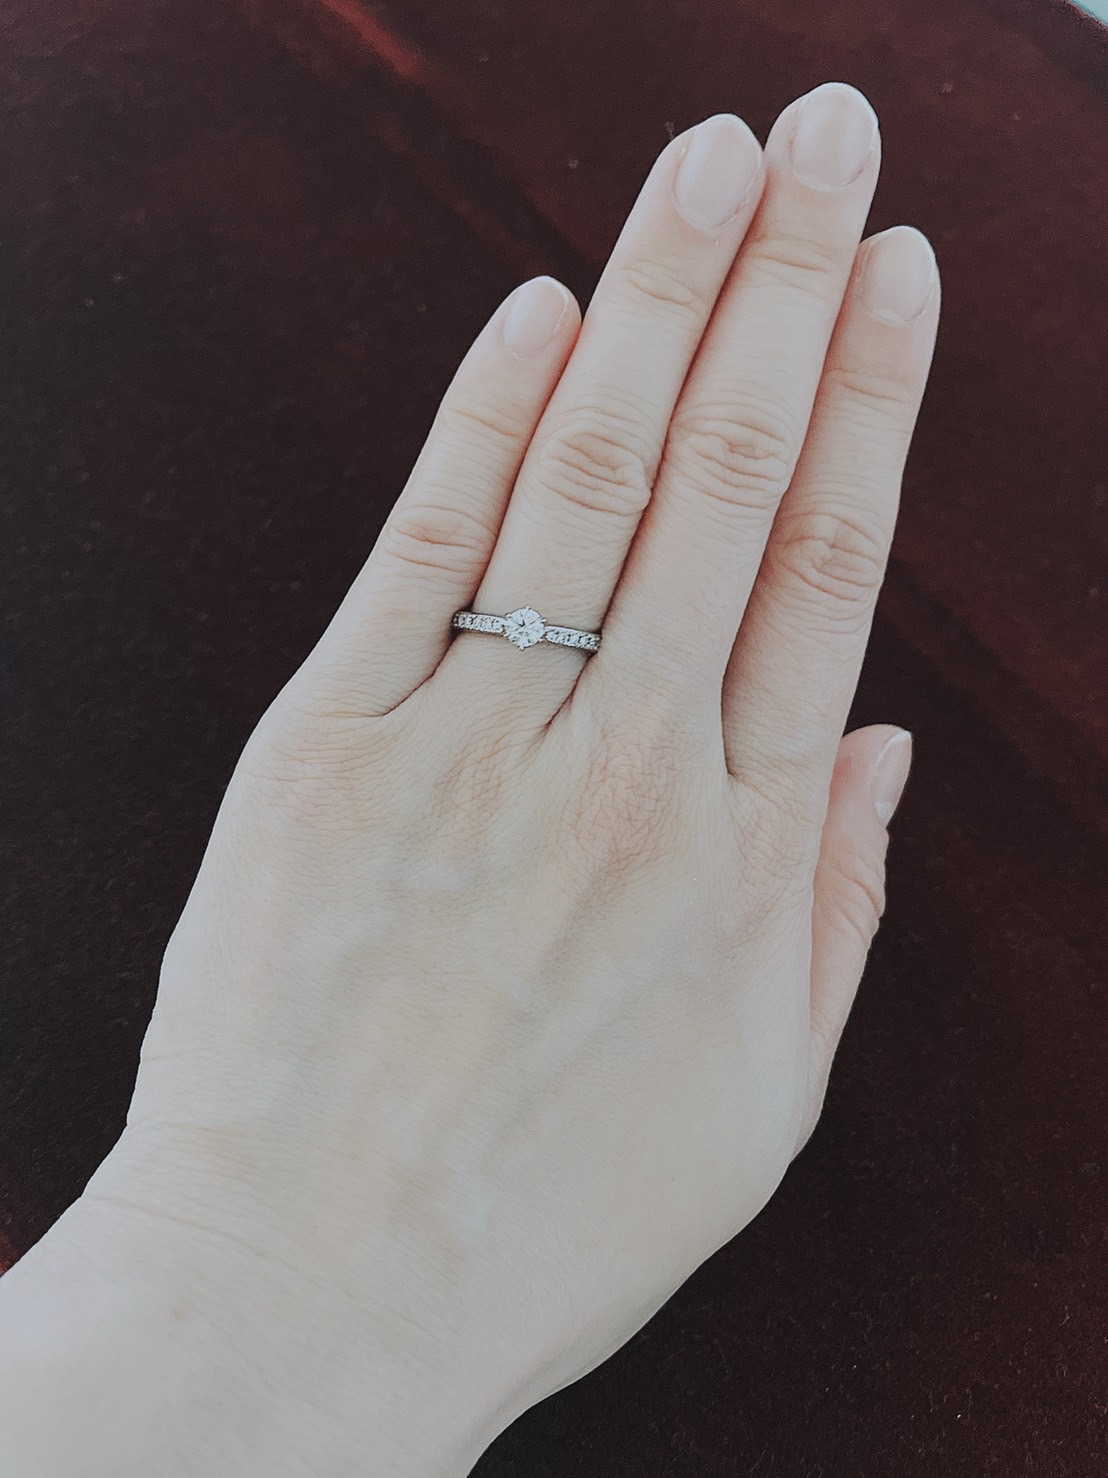 35歳女性元会員様から会員様から婚約指輪のお写真が届きました！　千葉結婚相談所